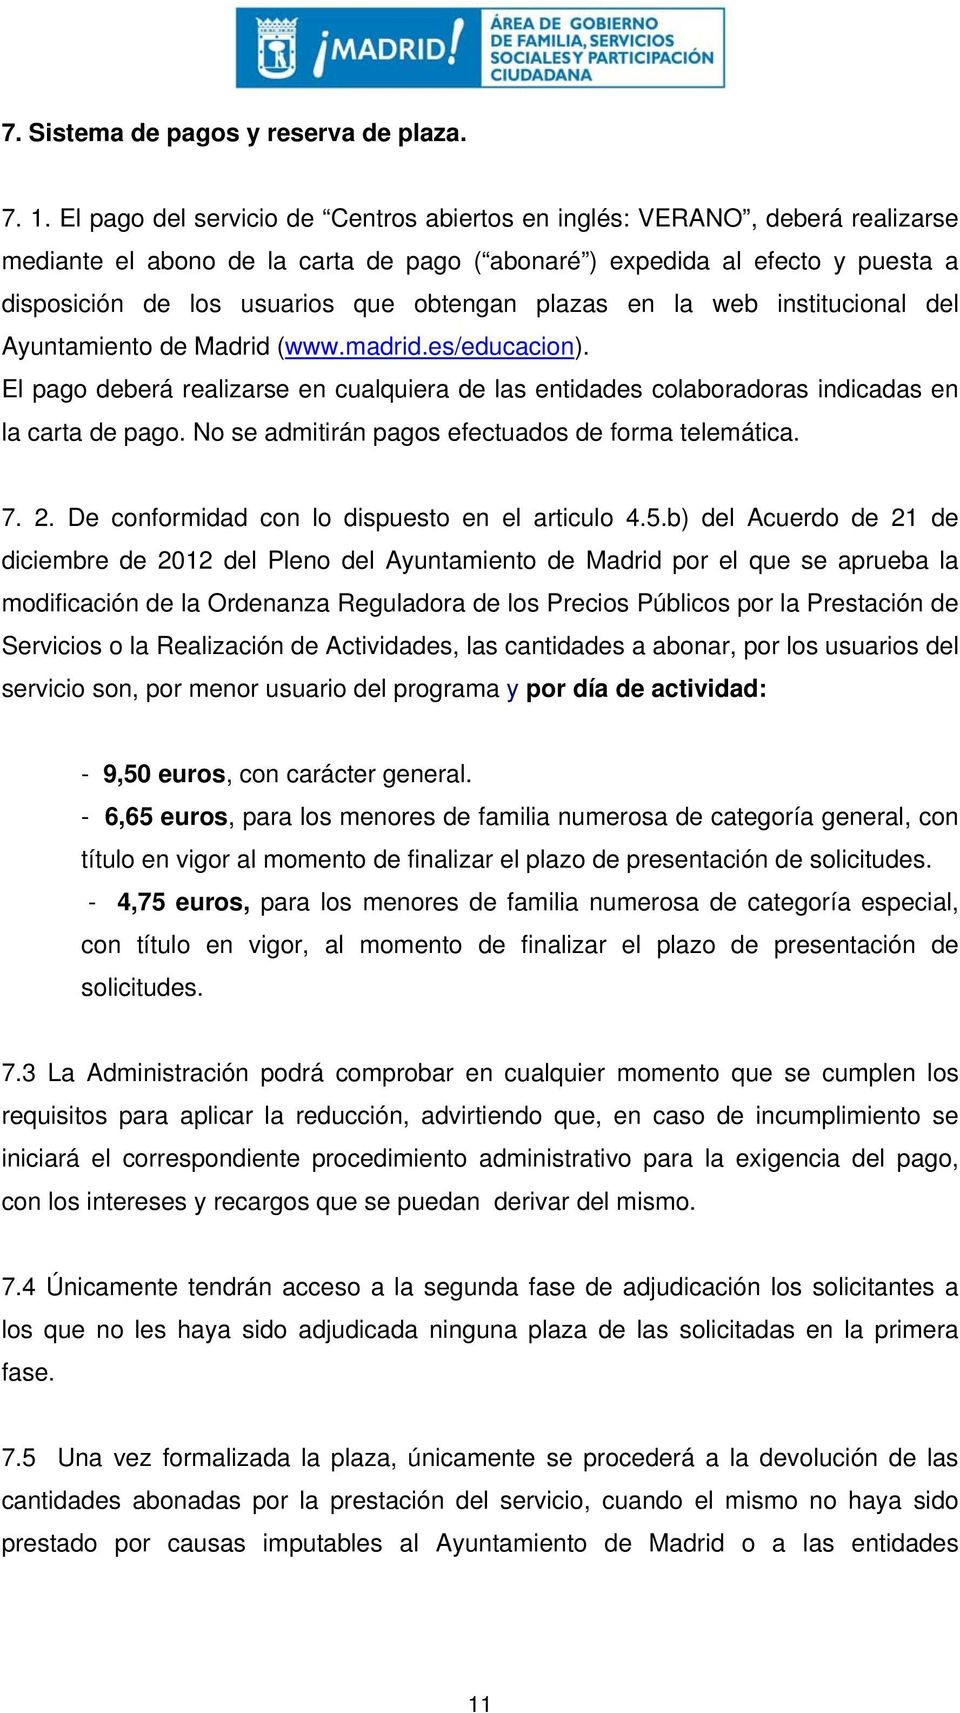 plazas en la web institucional del Ayuntamiento de Madrid (www.madrid.es/educacion). El pago deberá realizarse en cualquiera de las entidades colaboradoras indicadas en la carta de pago.